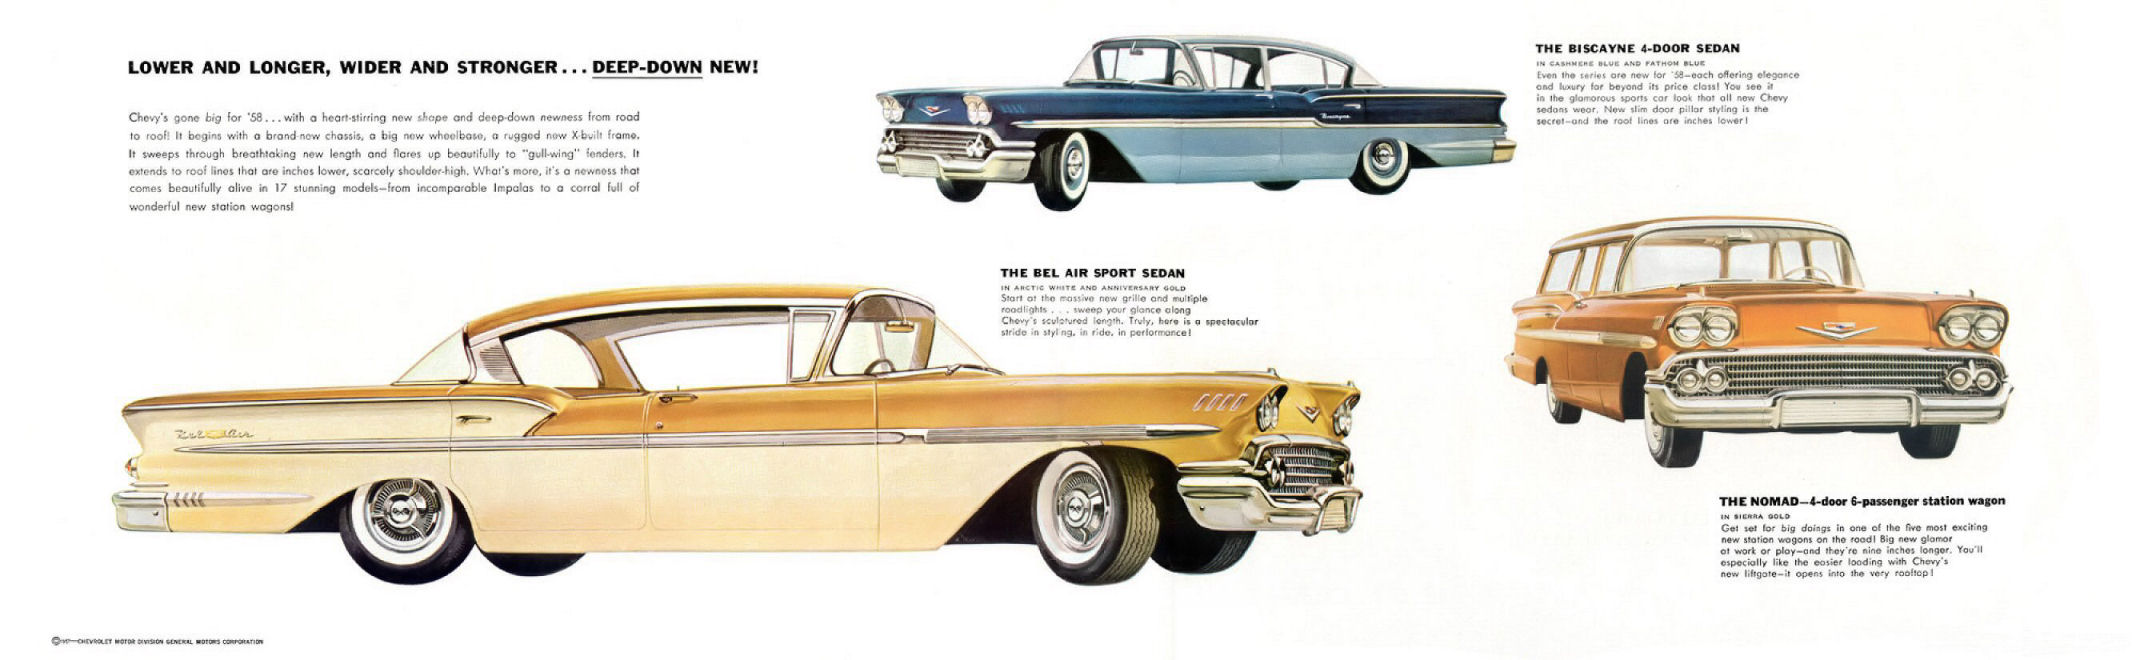 1958 Chevrolet Foldout-02